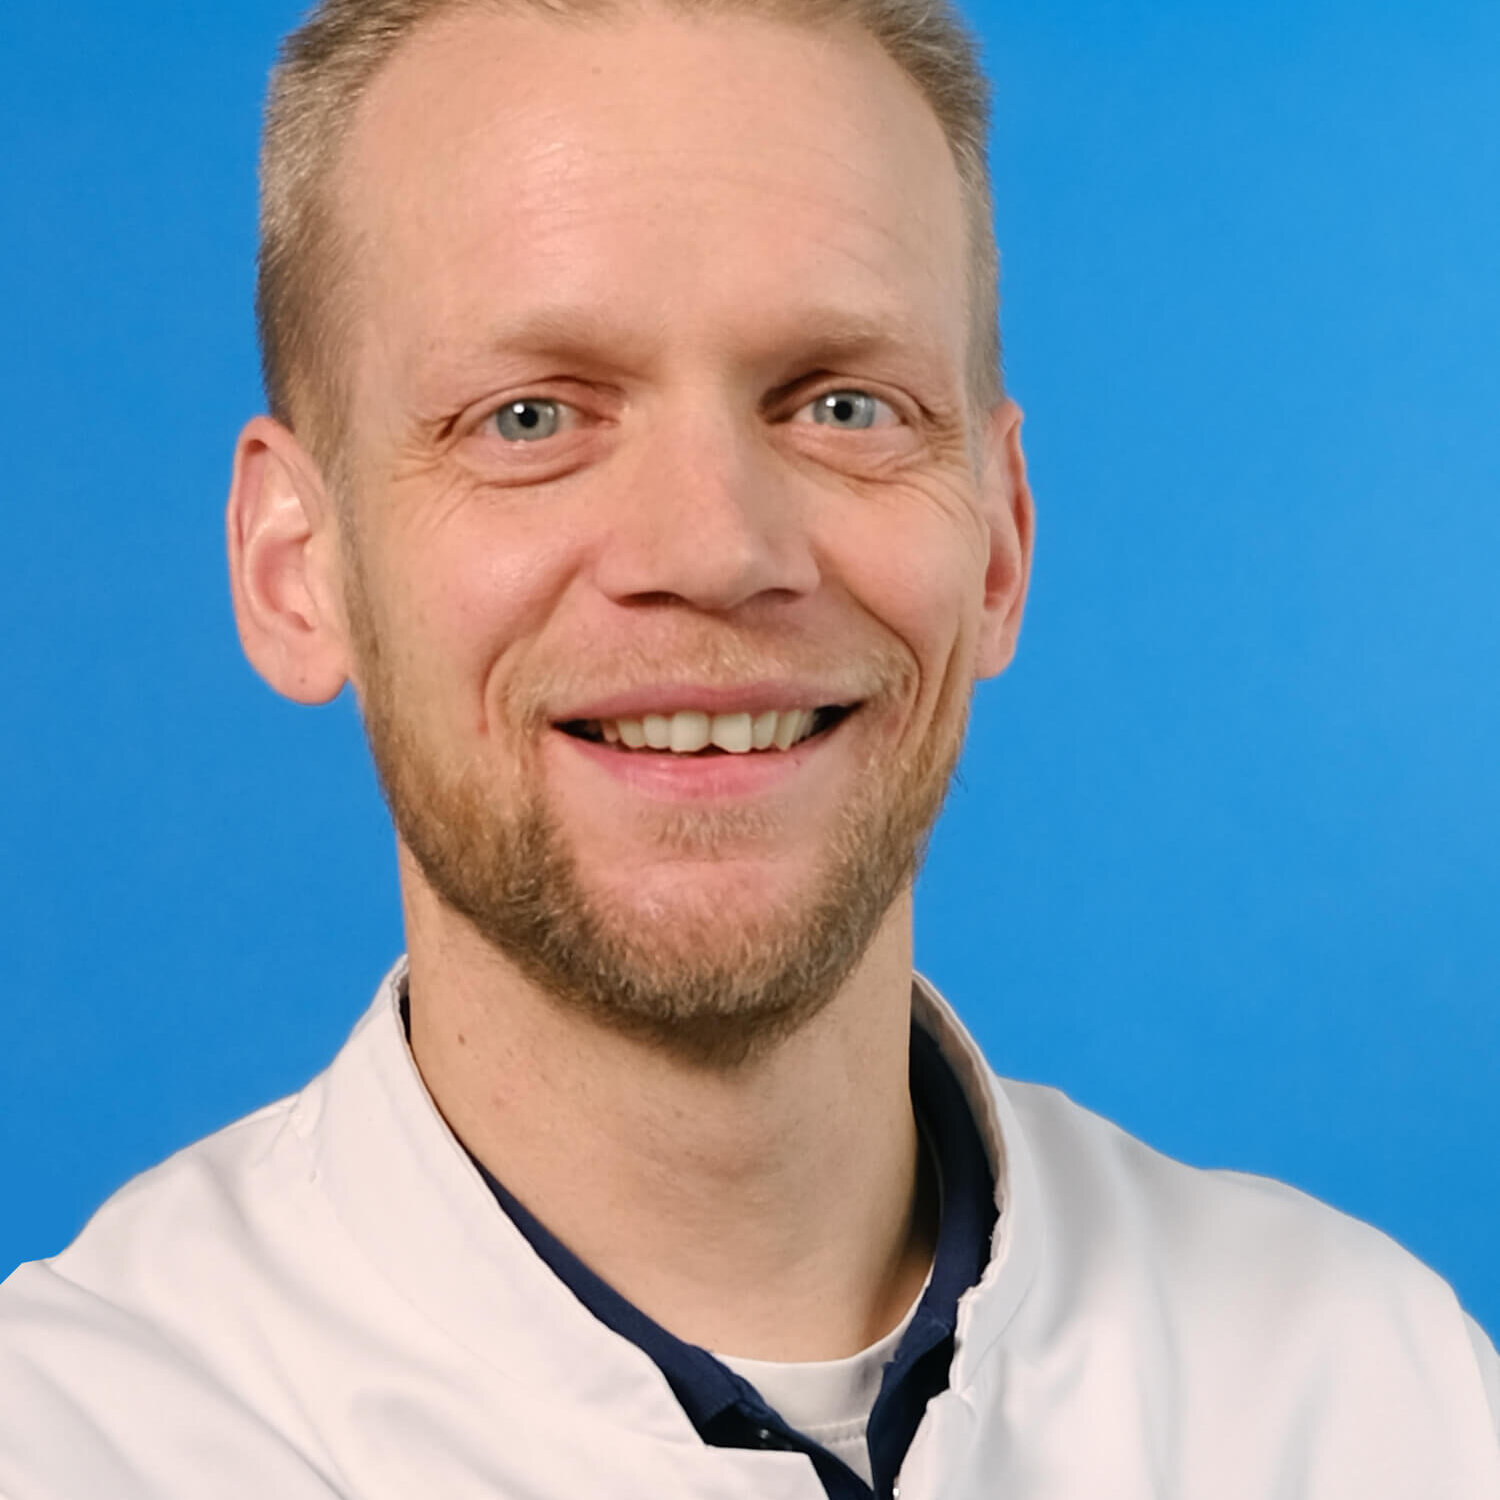 Dr. Jaap Mulder